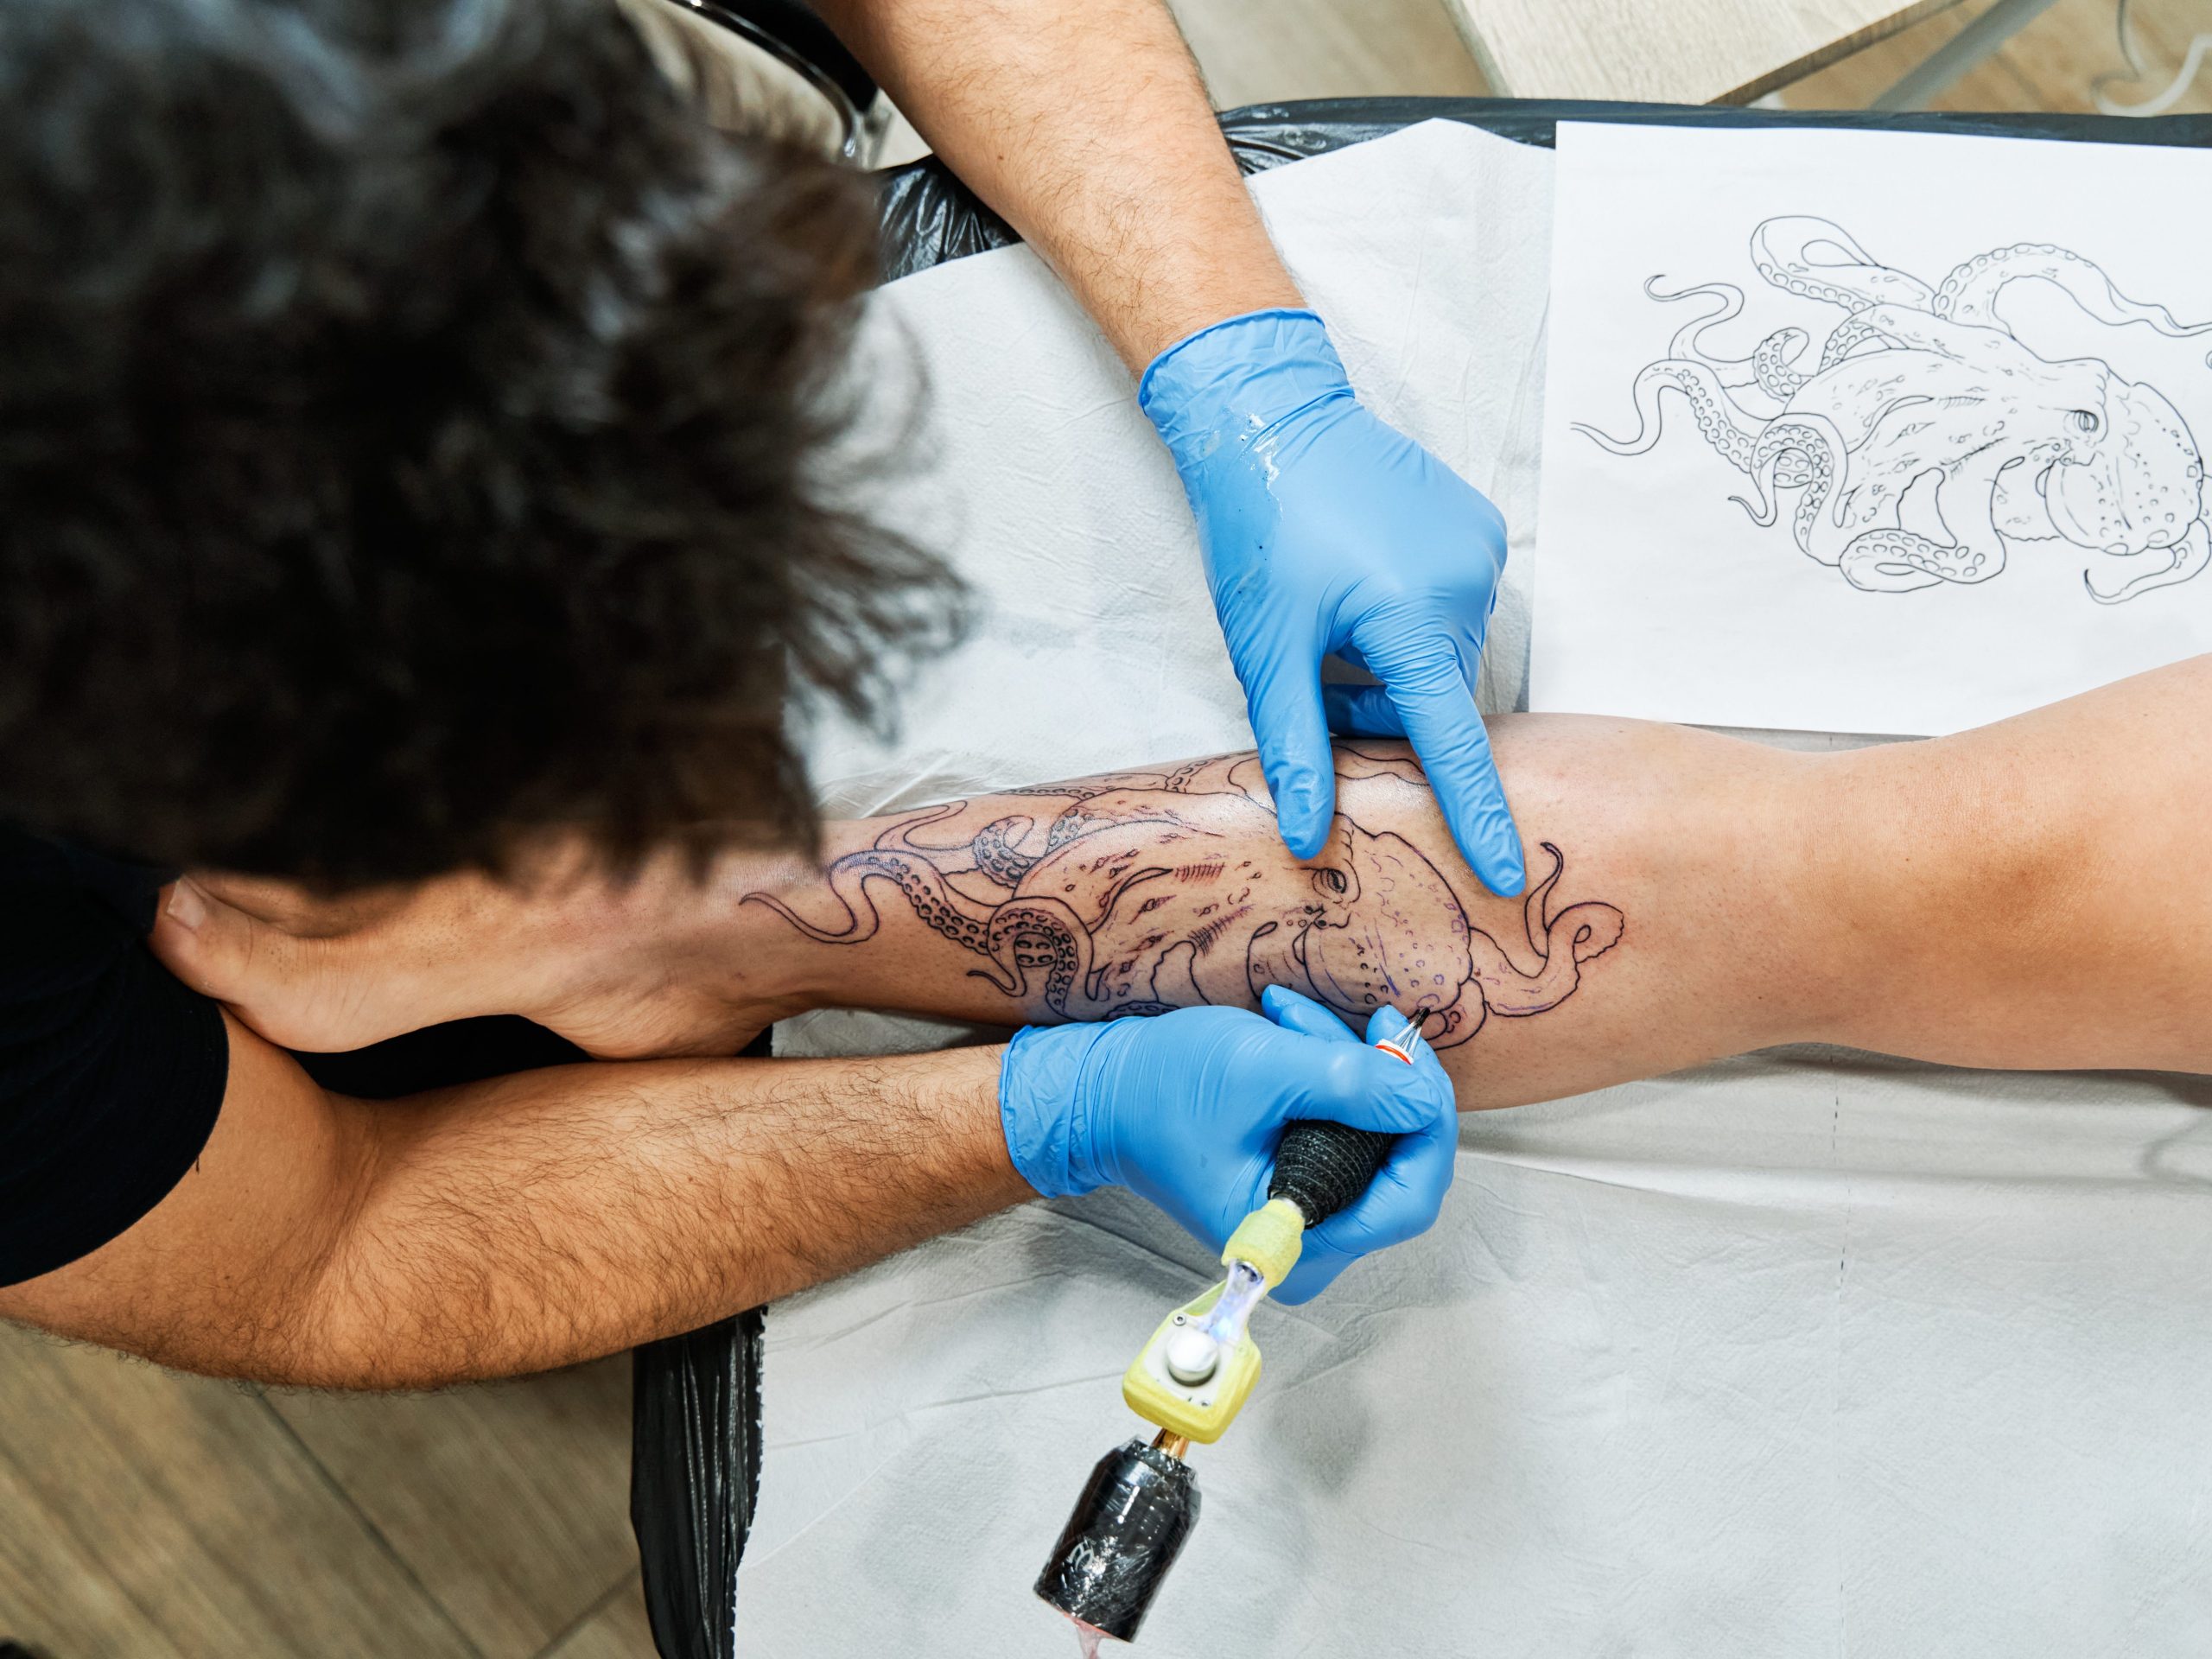 Tattoo artst inking octopus design on client's leg